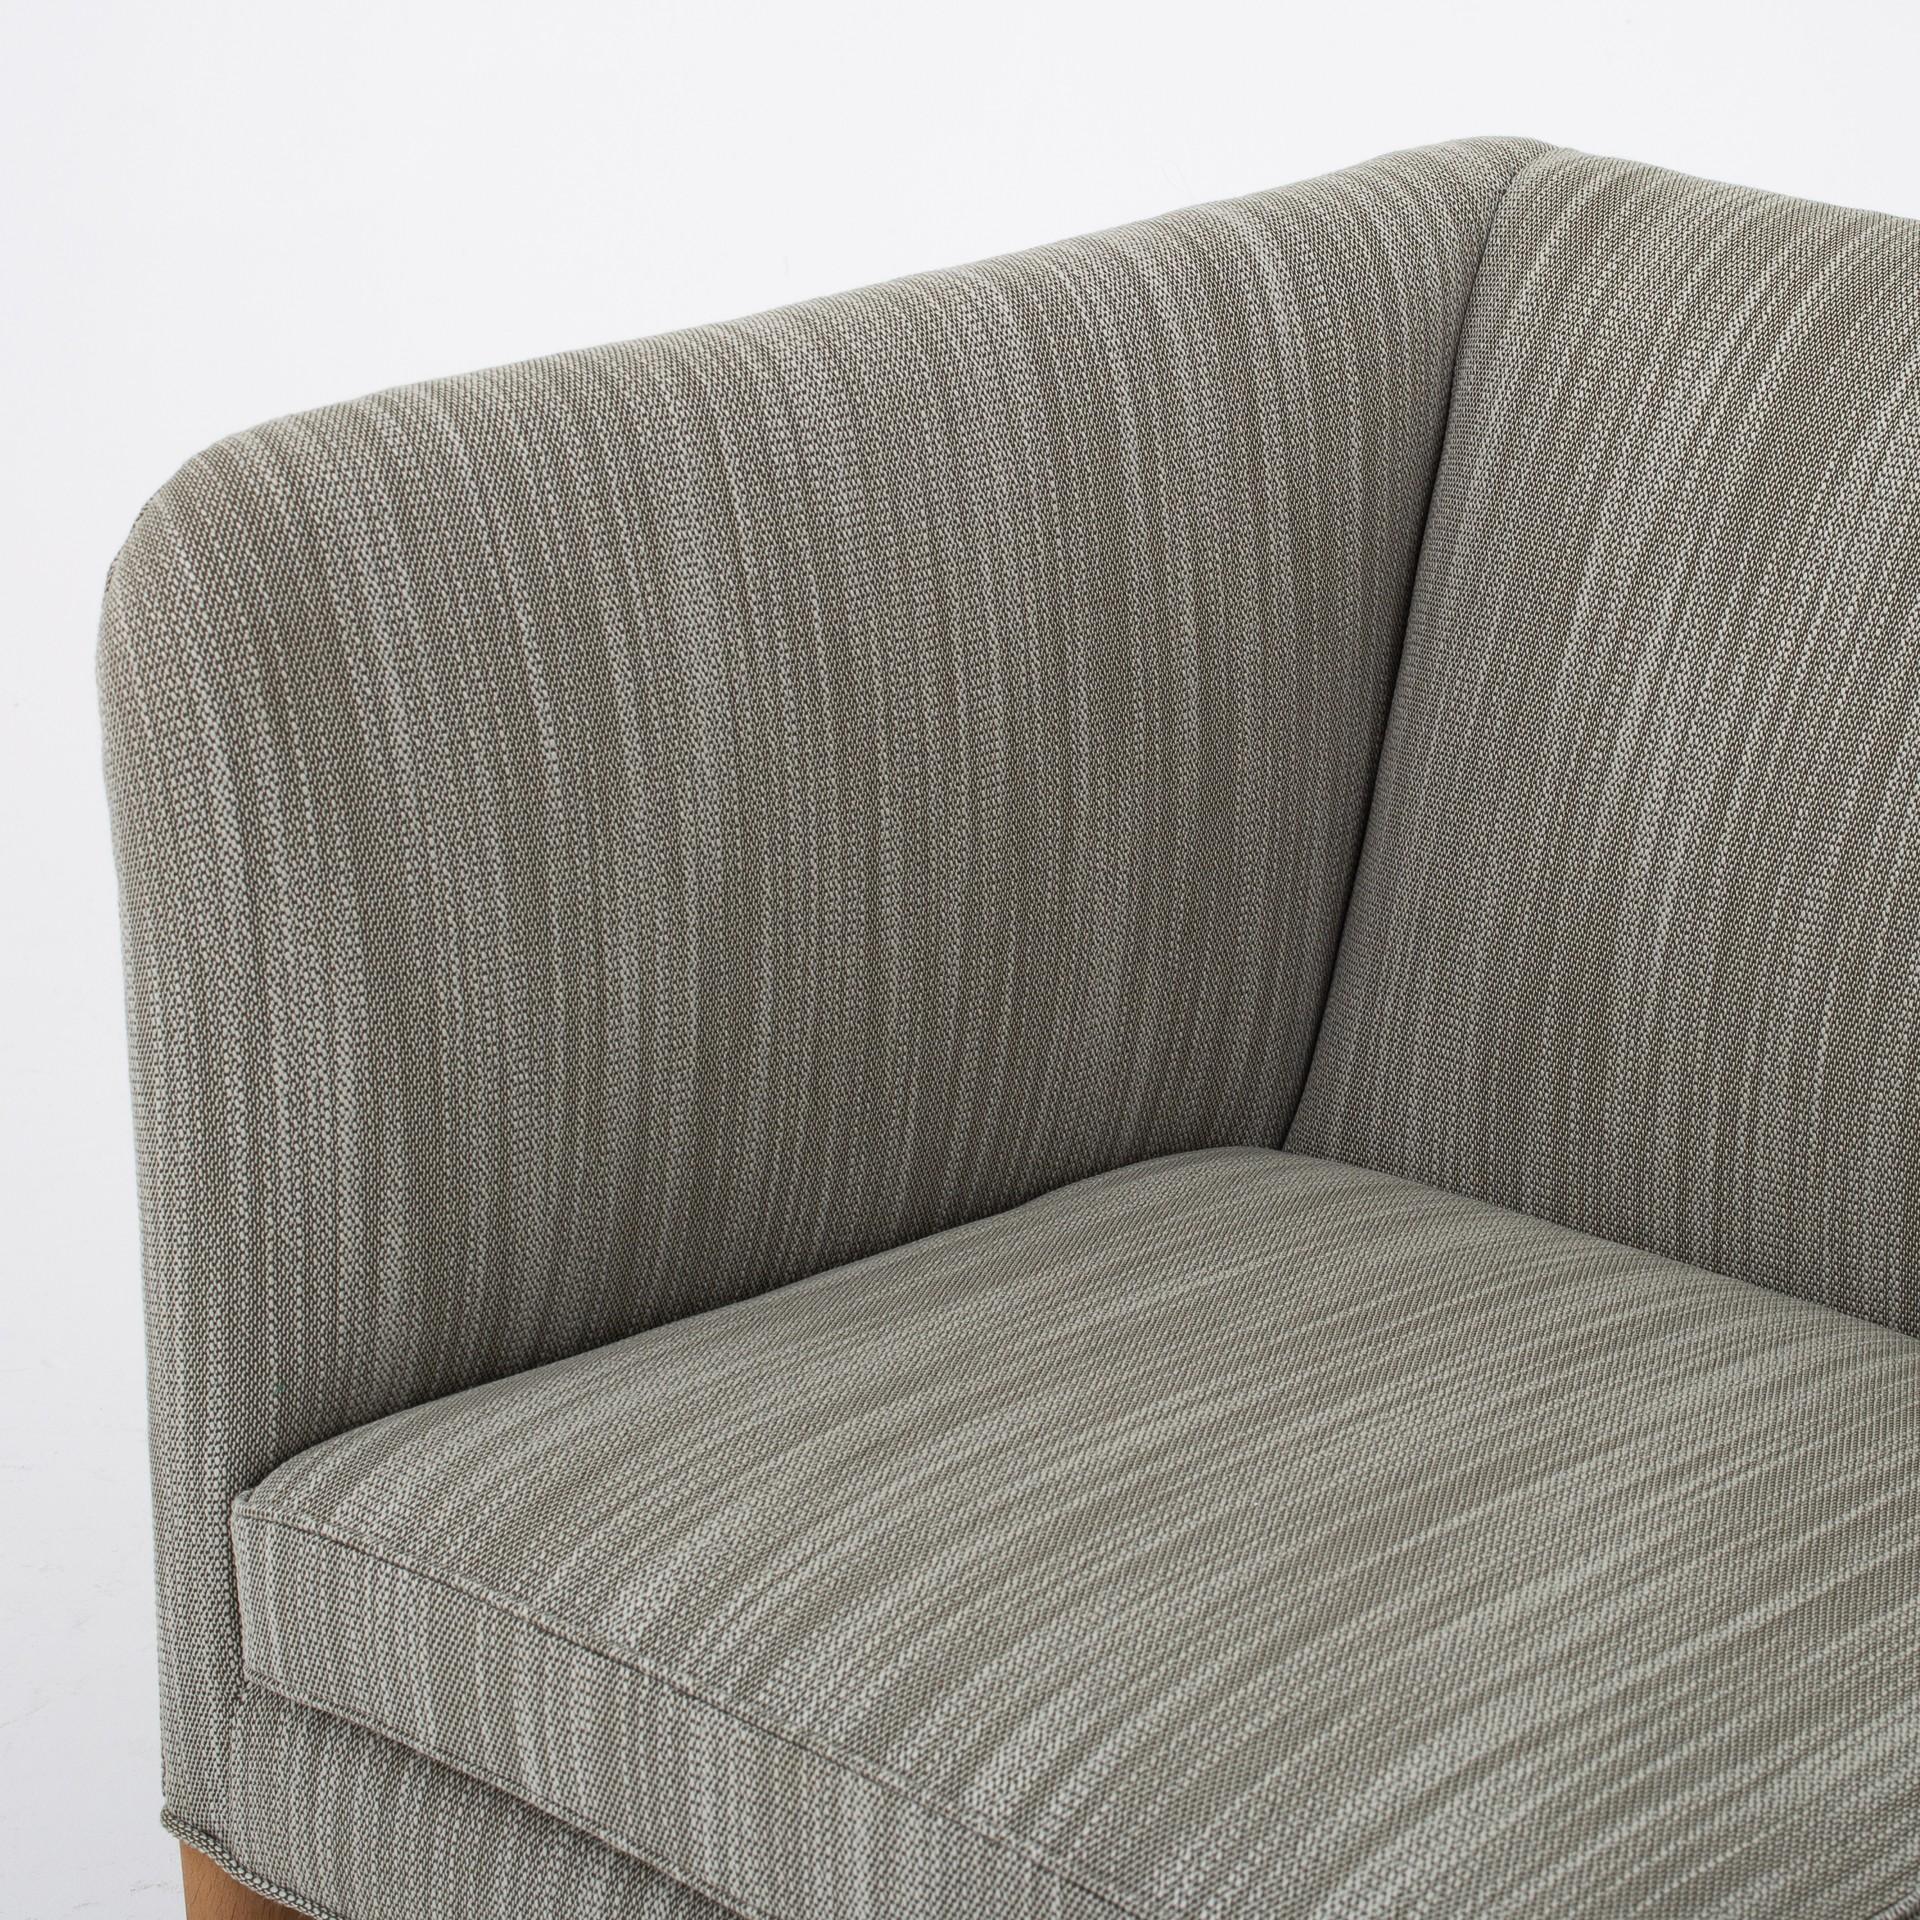 AP 18S – reupholstered 3-seat sofa in green/grey Lila wool col.: 951, legs in oak. Maker Johannes Hansen.